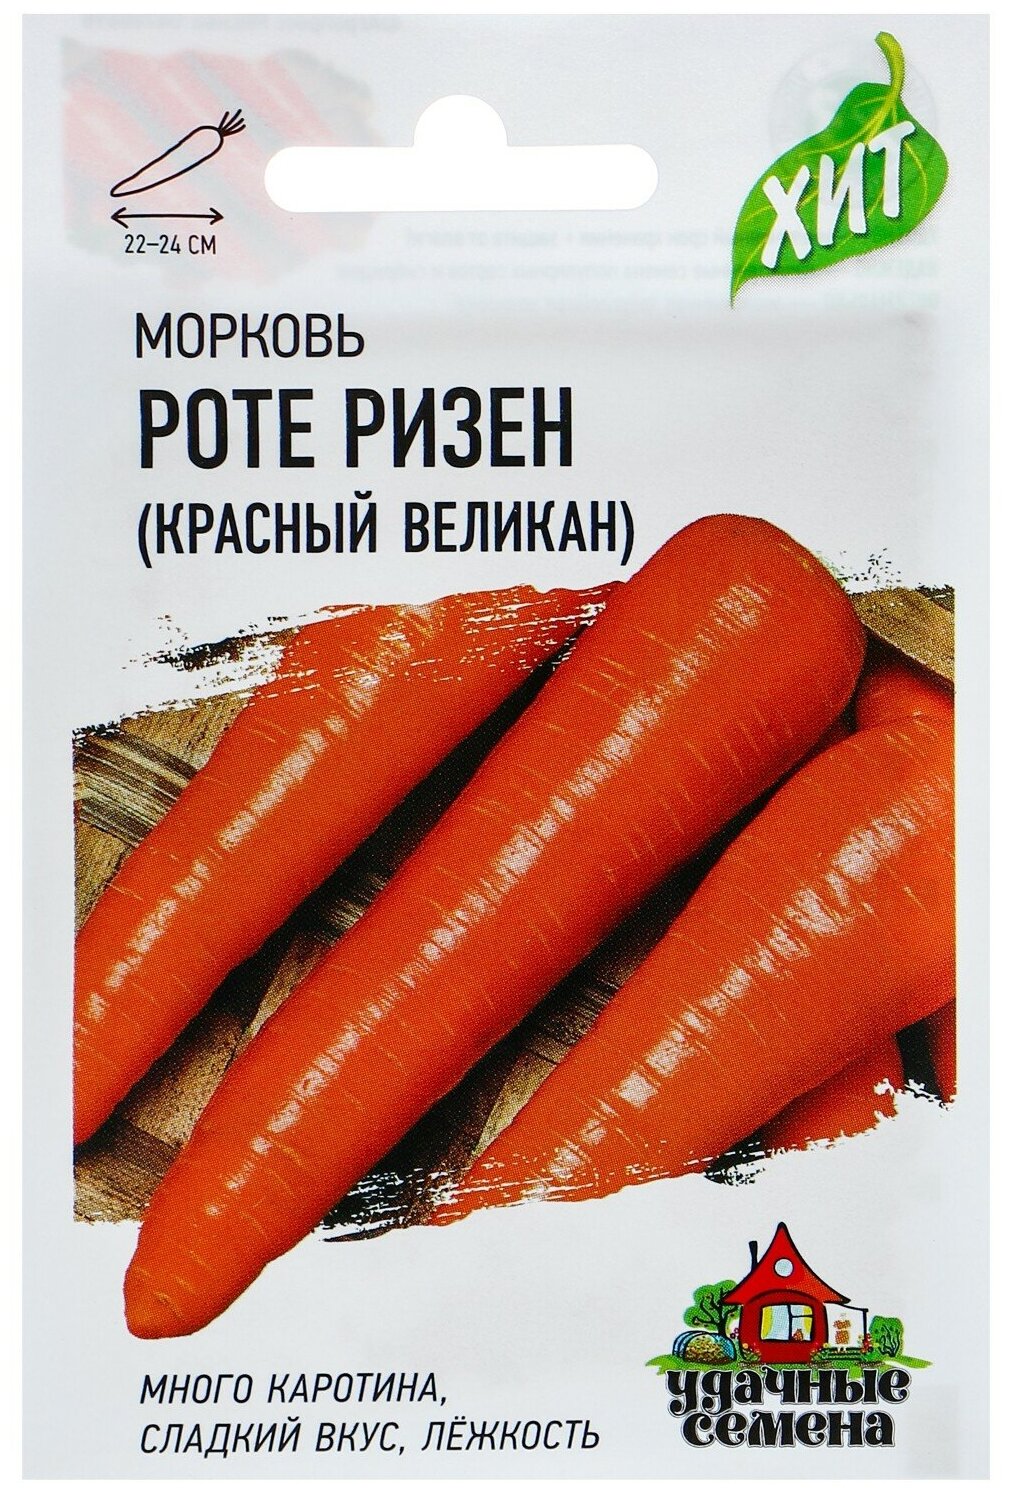 Семена Гавриш Удачные семена ХИТ х3 Морковь Красный великан (Роте Ризен) 2 г